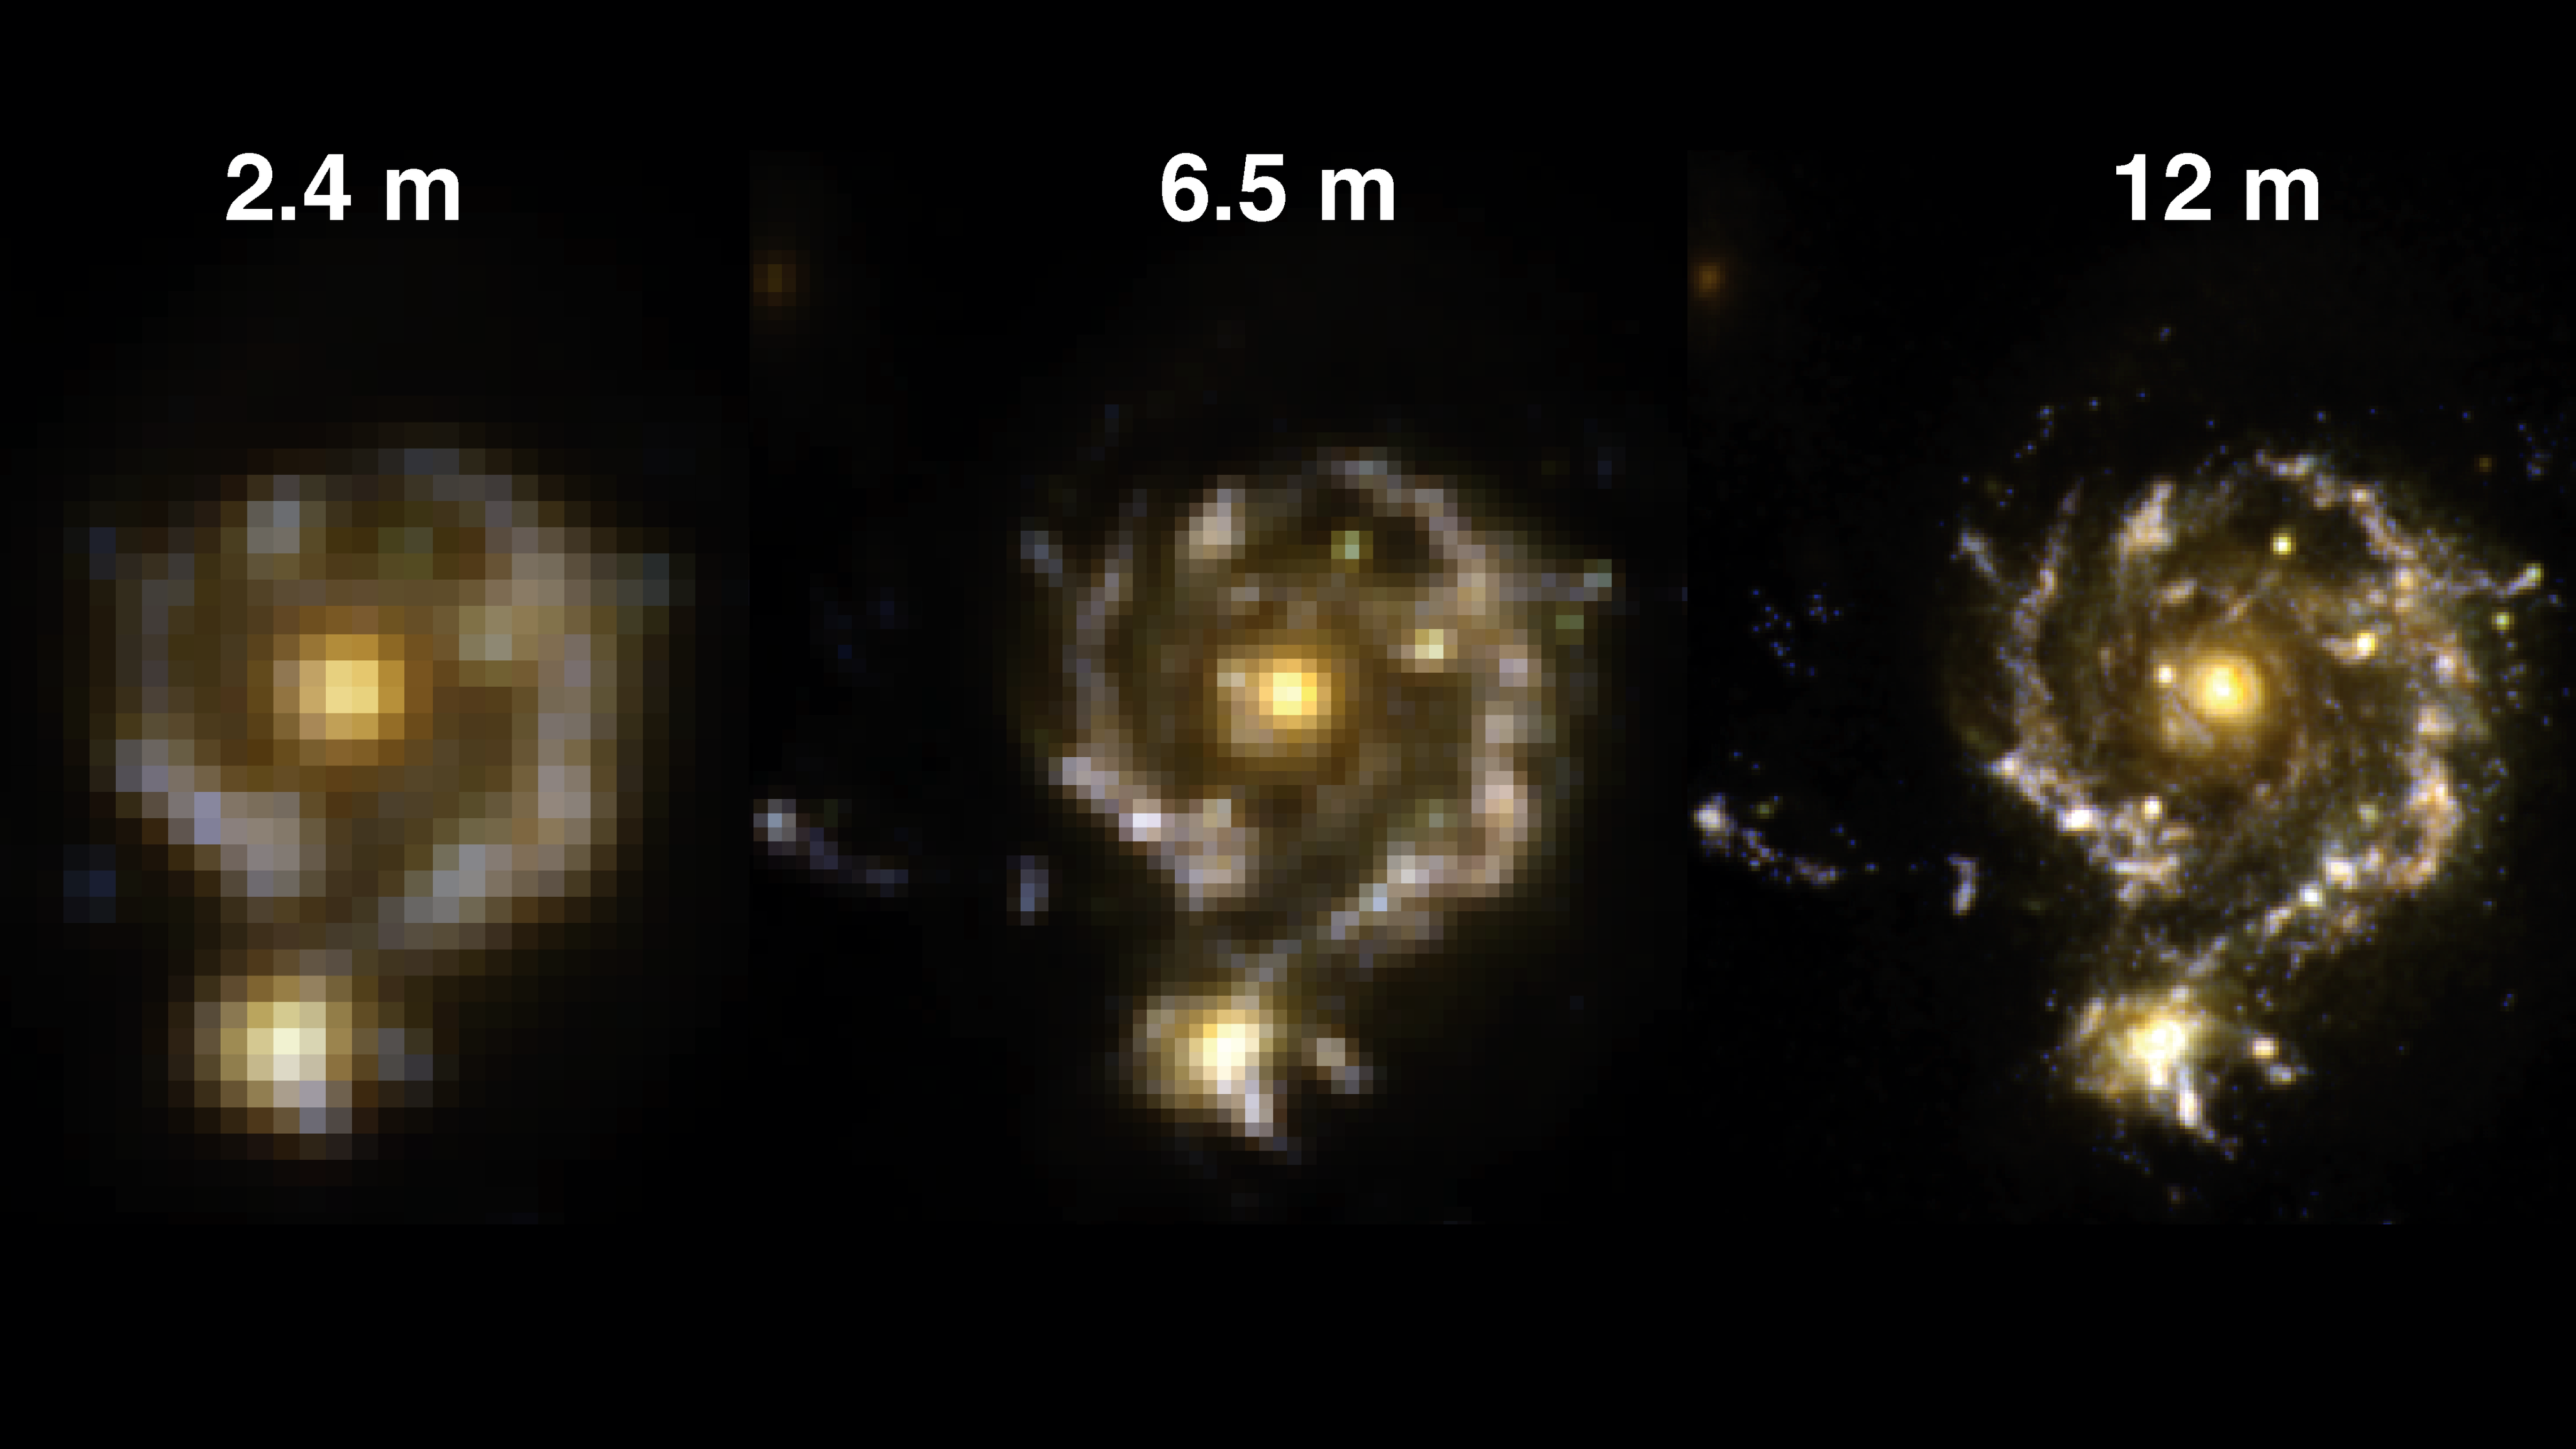 Jak zmienia się szczegółowość obrazu odległej galaktyki, gdy zwierciadło teleskopu „rośnie” z 2,4 m (teleskop im. Hubble’a) do 6,5 metra (teleskop im. Jamesa Webba)? Odpowiedź kryje się w dwóch pierwszych obrazkach. Obrazek po prawej stronie to symulacja dla hipotetycznego teleskopu, który dysponowałby zwierciadłem o średnicy 12 metrów. Rys. twitter.com/HubbleTelescope.